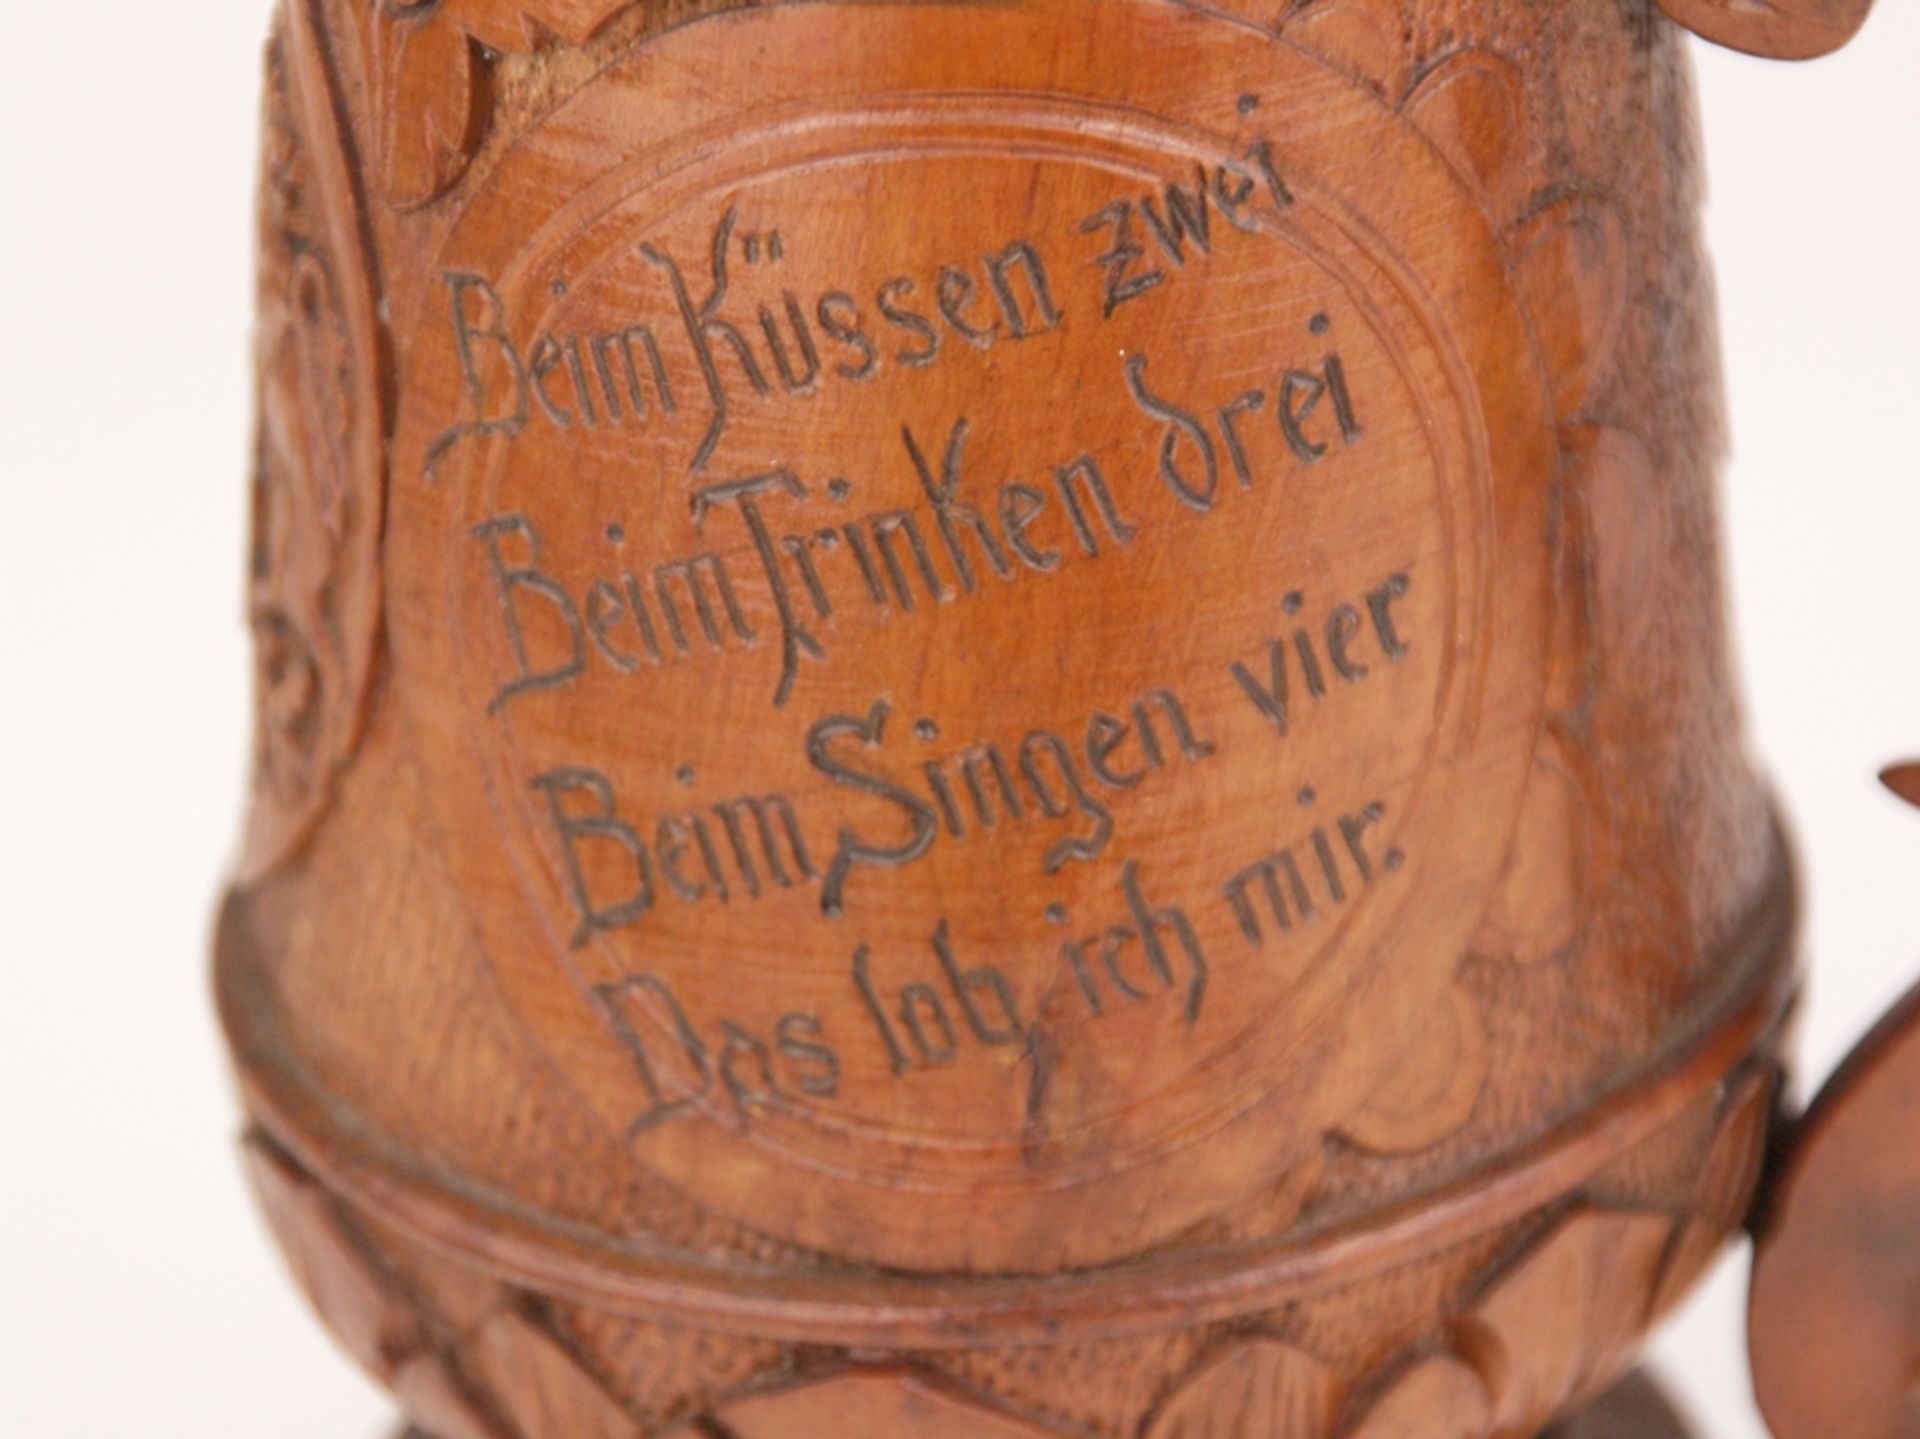 Bierkrug - Deutschland, ca.1880-1900, Holz, geschnitzt, Motiv mit bayerischem Löwen sowie Aufschrift - Bild 7 aus 8